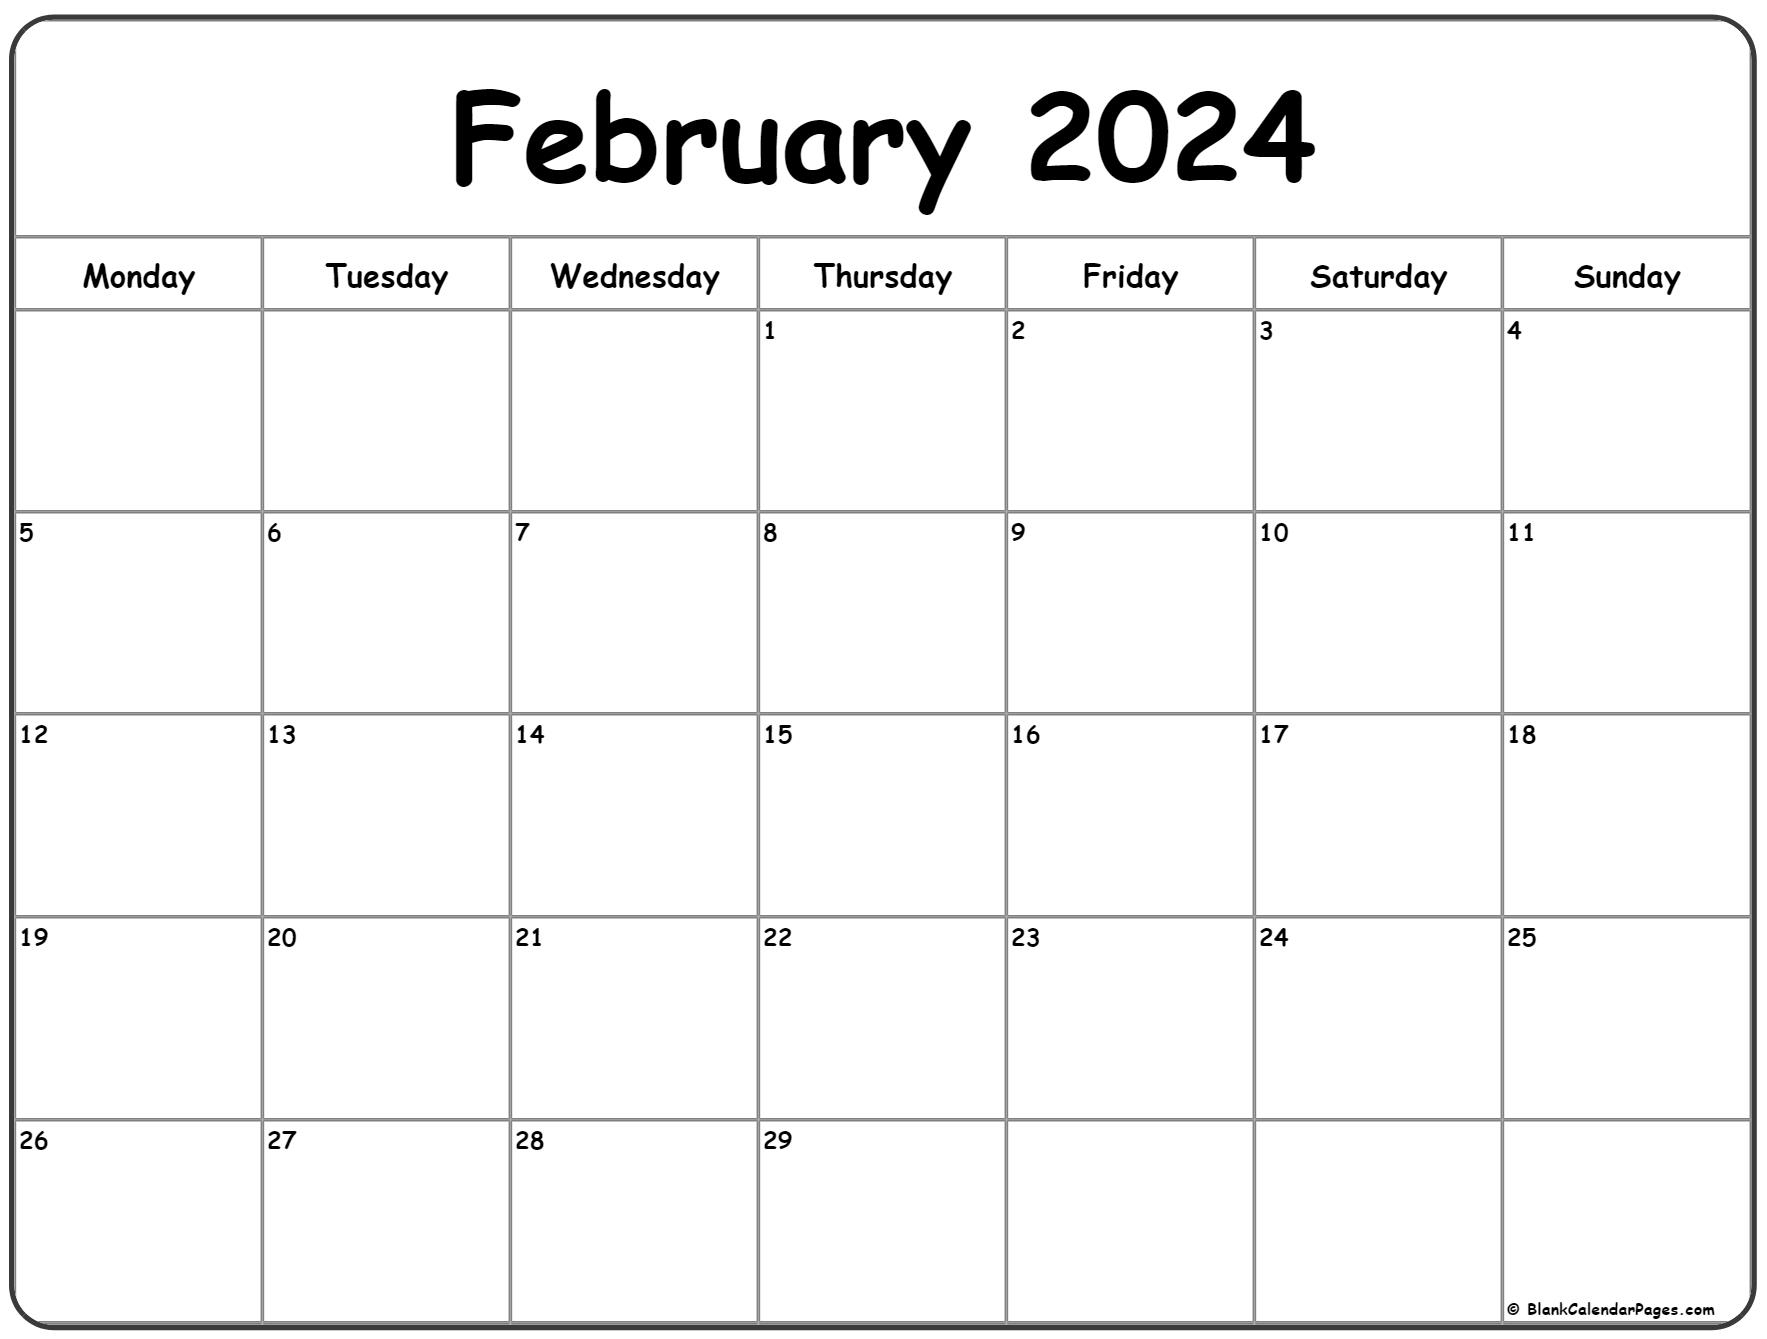 February 2024 Monday Calendar | Monday To Sunday for 2024 Calendar Printable February